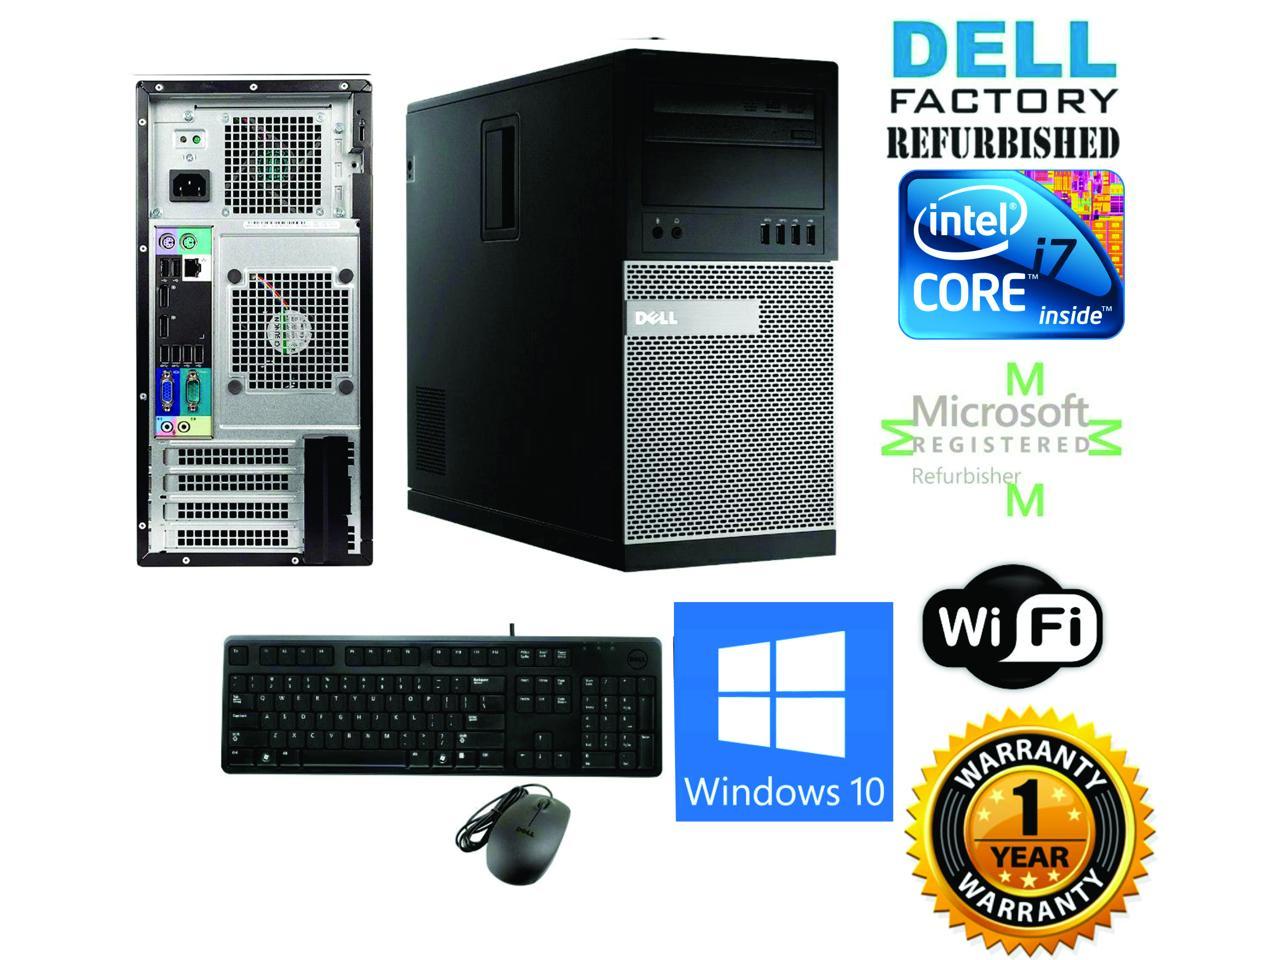 Refurbished: Dell Gaming 9010 TOWER DESKTOP i7 3770 Quad